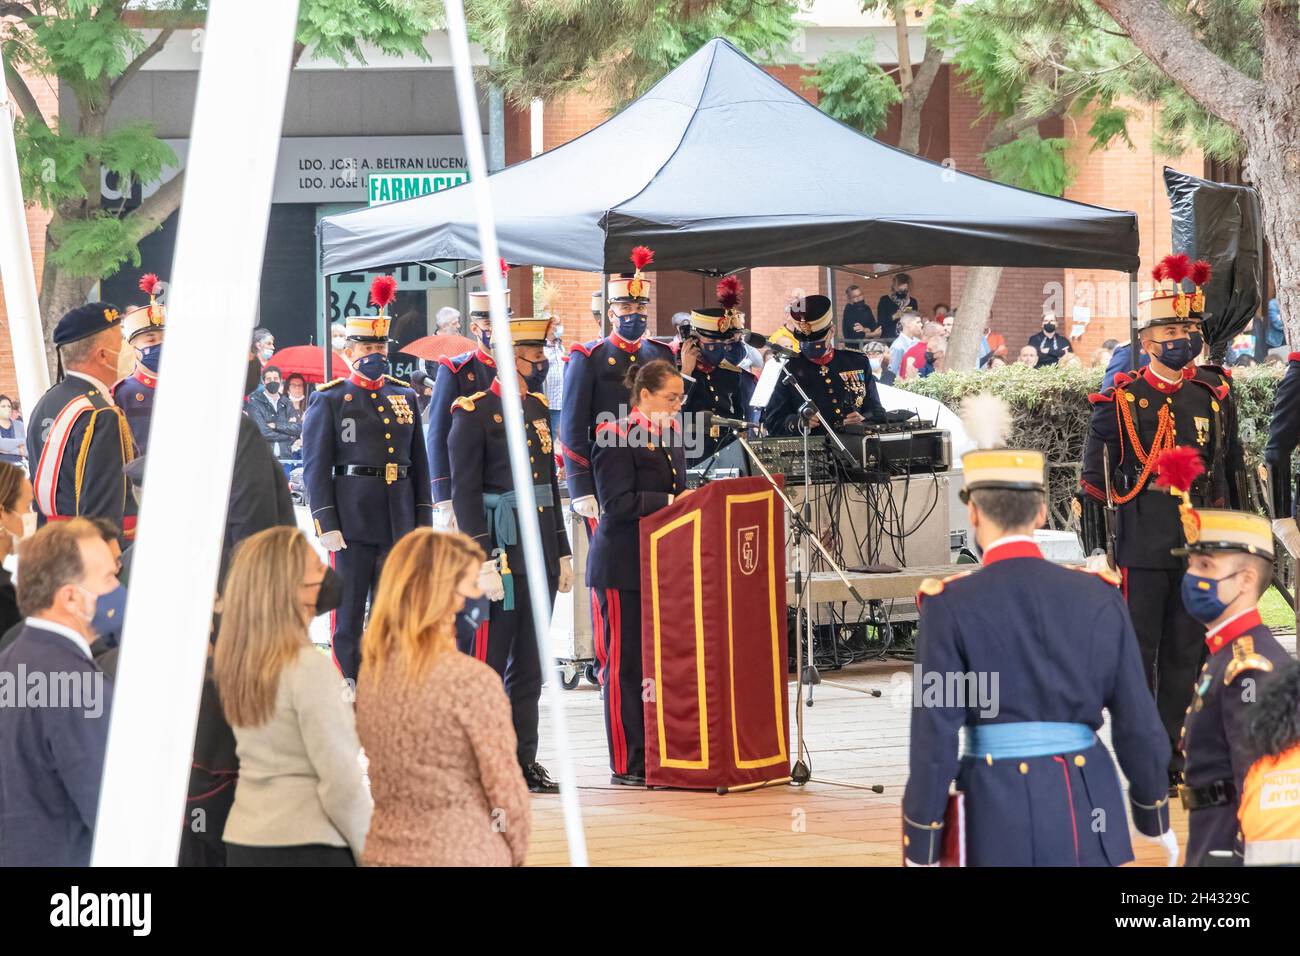 Huelva, Espagne - 30 octobre 2021: Discours de la Garde royale espagnole avant le serment d'allégeance au drapeau espagnol des civils qui le souhaitent Banque D'Images